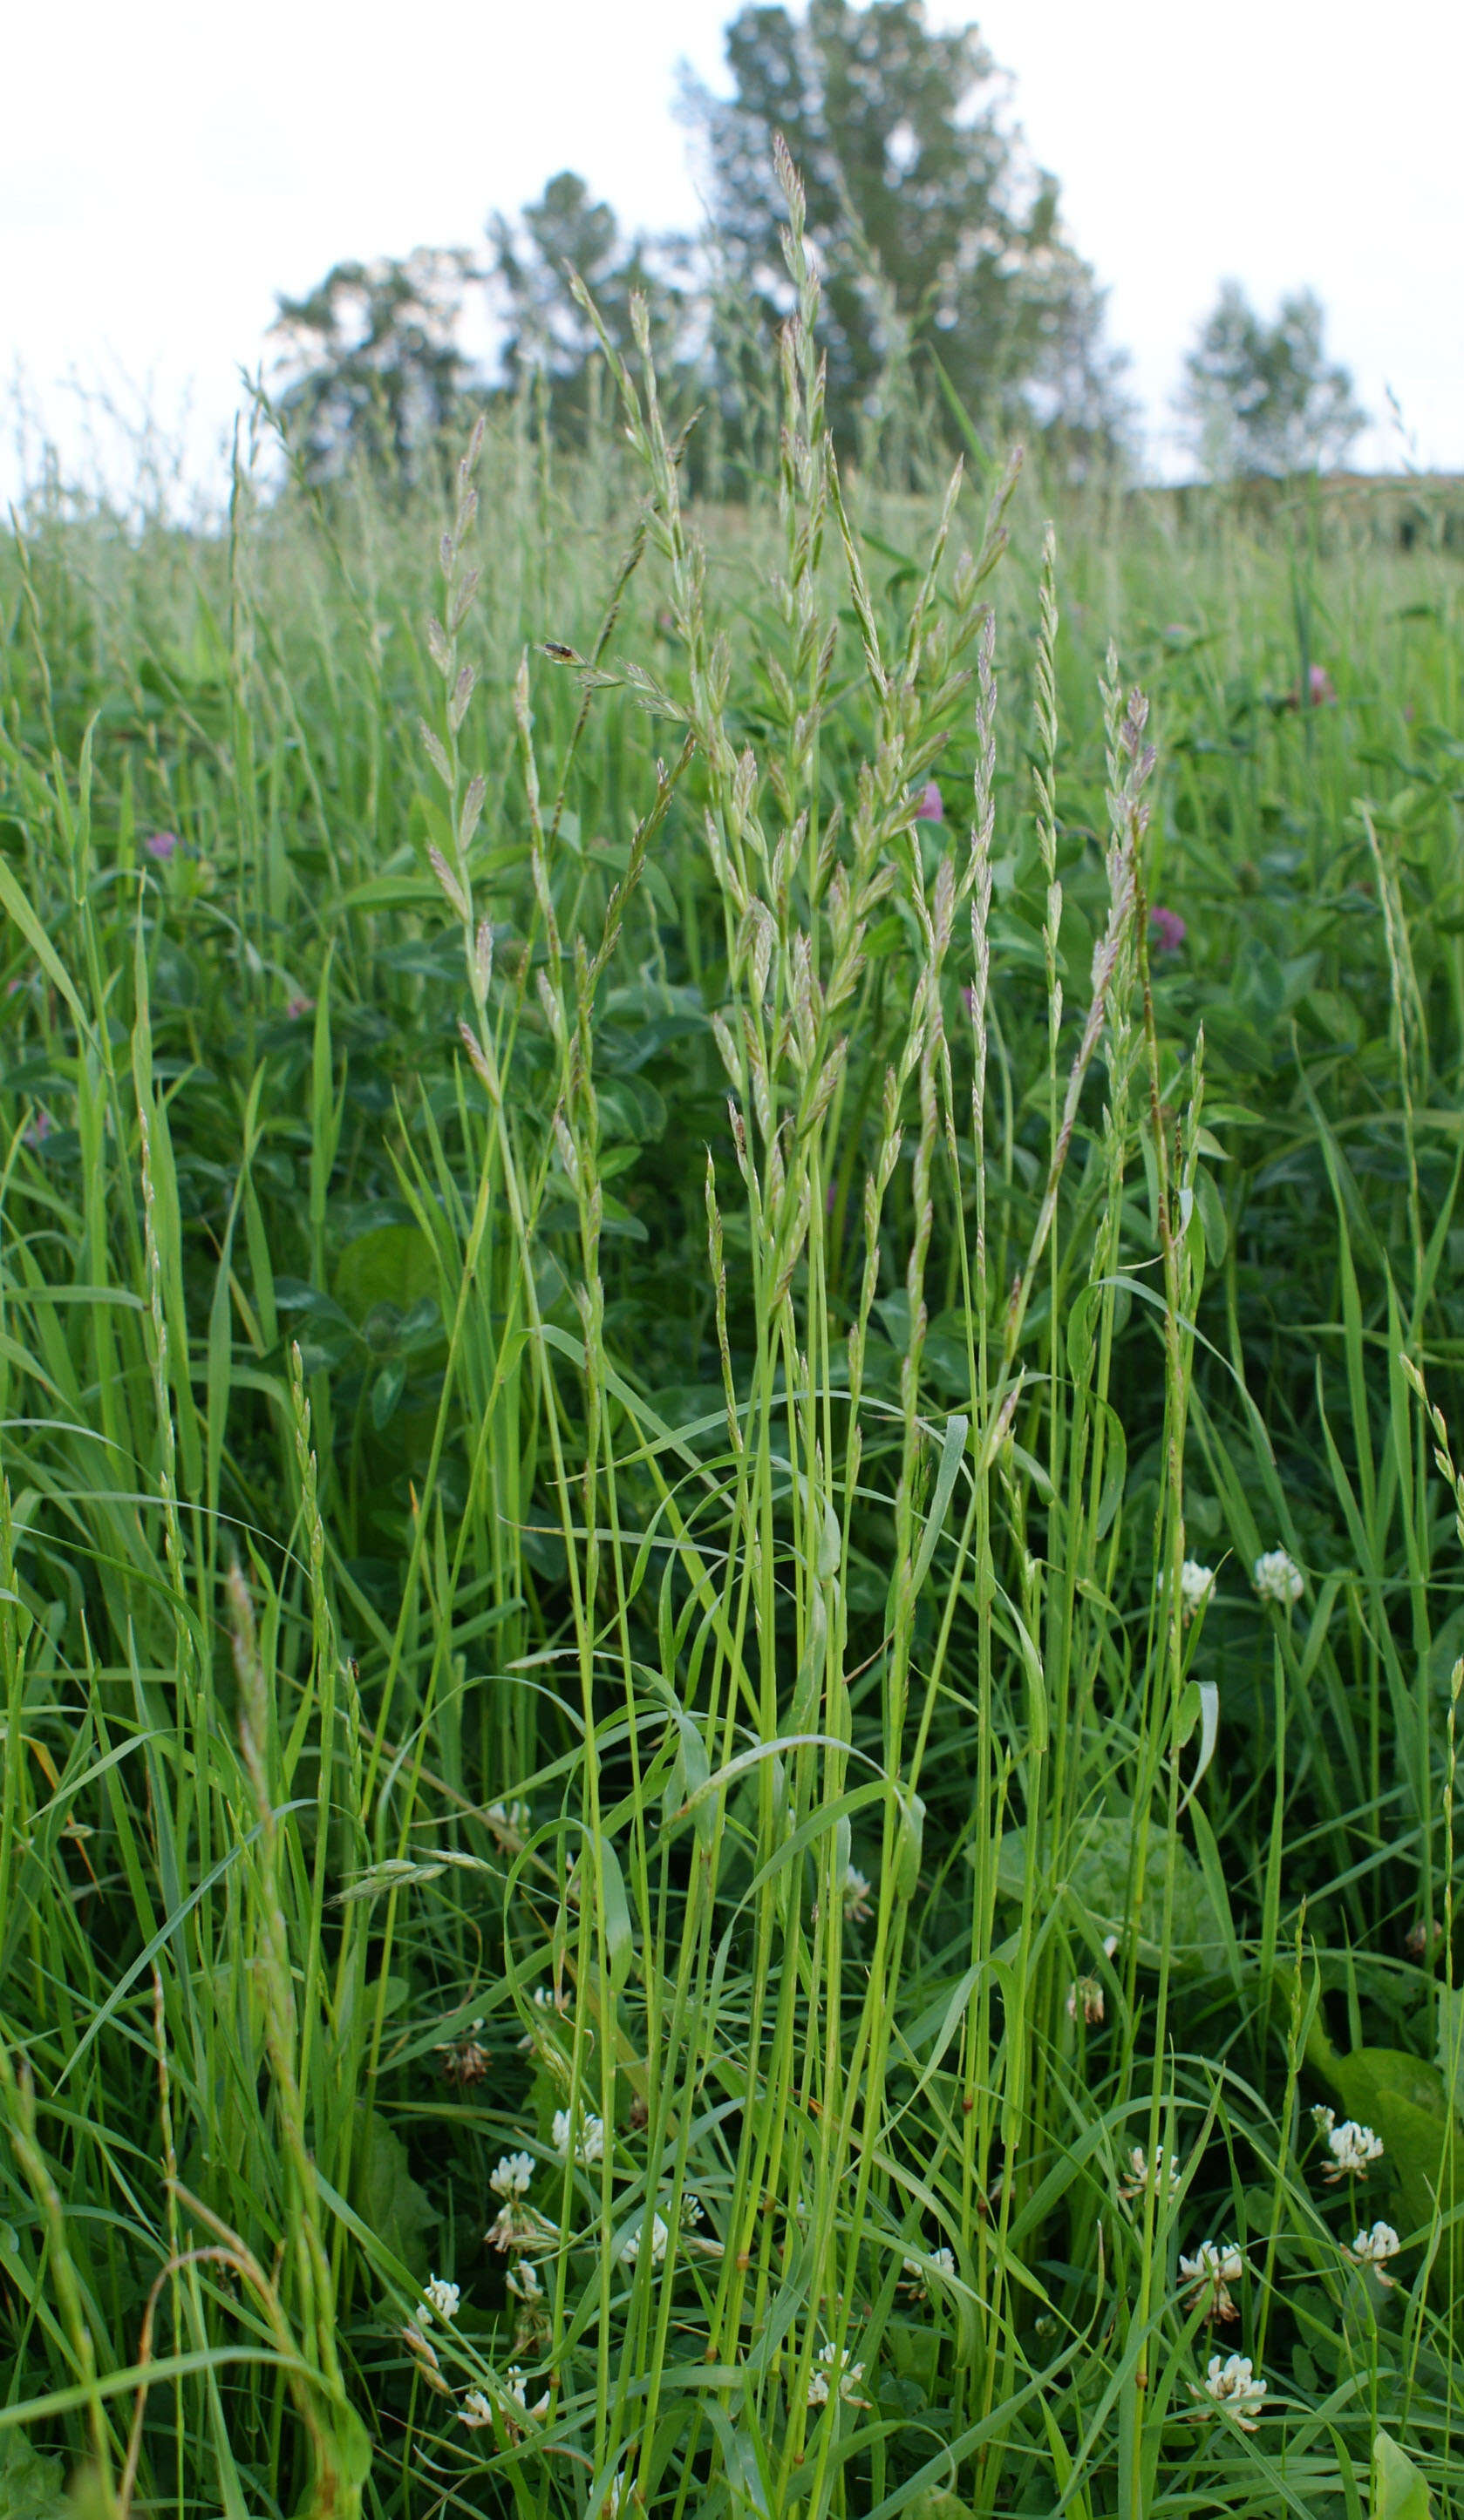 Image of Italian Rye Grass